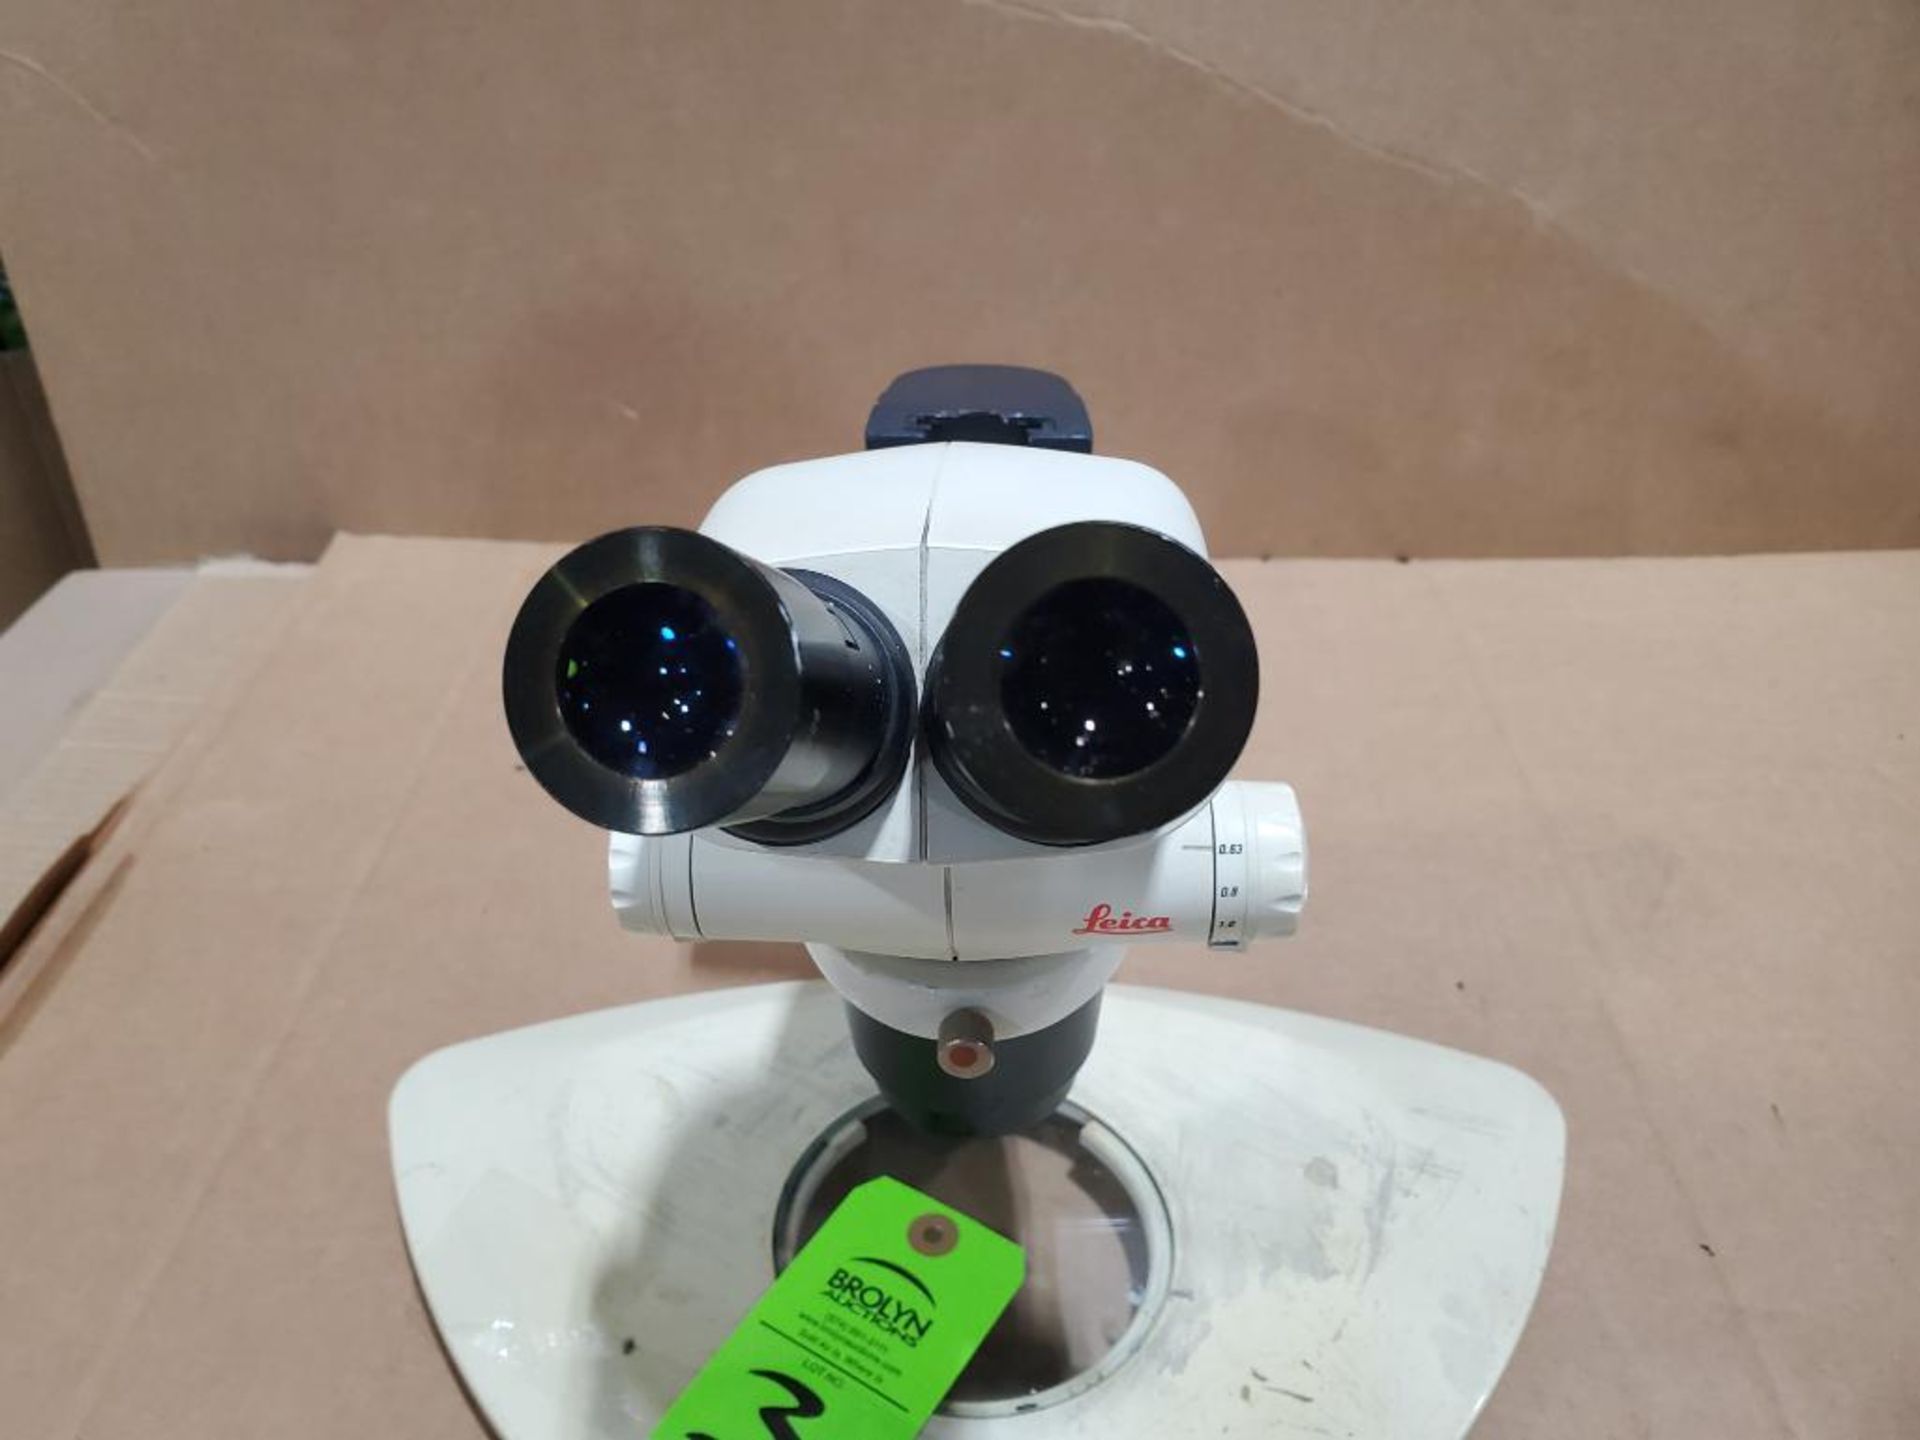 Leica S6E microscope. - Image 3 of 5